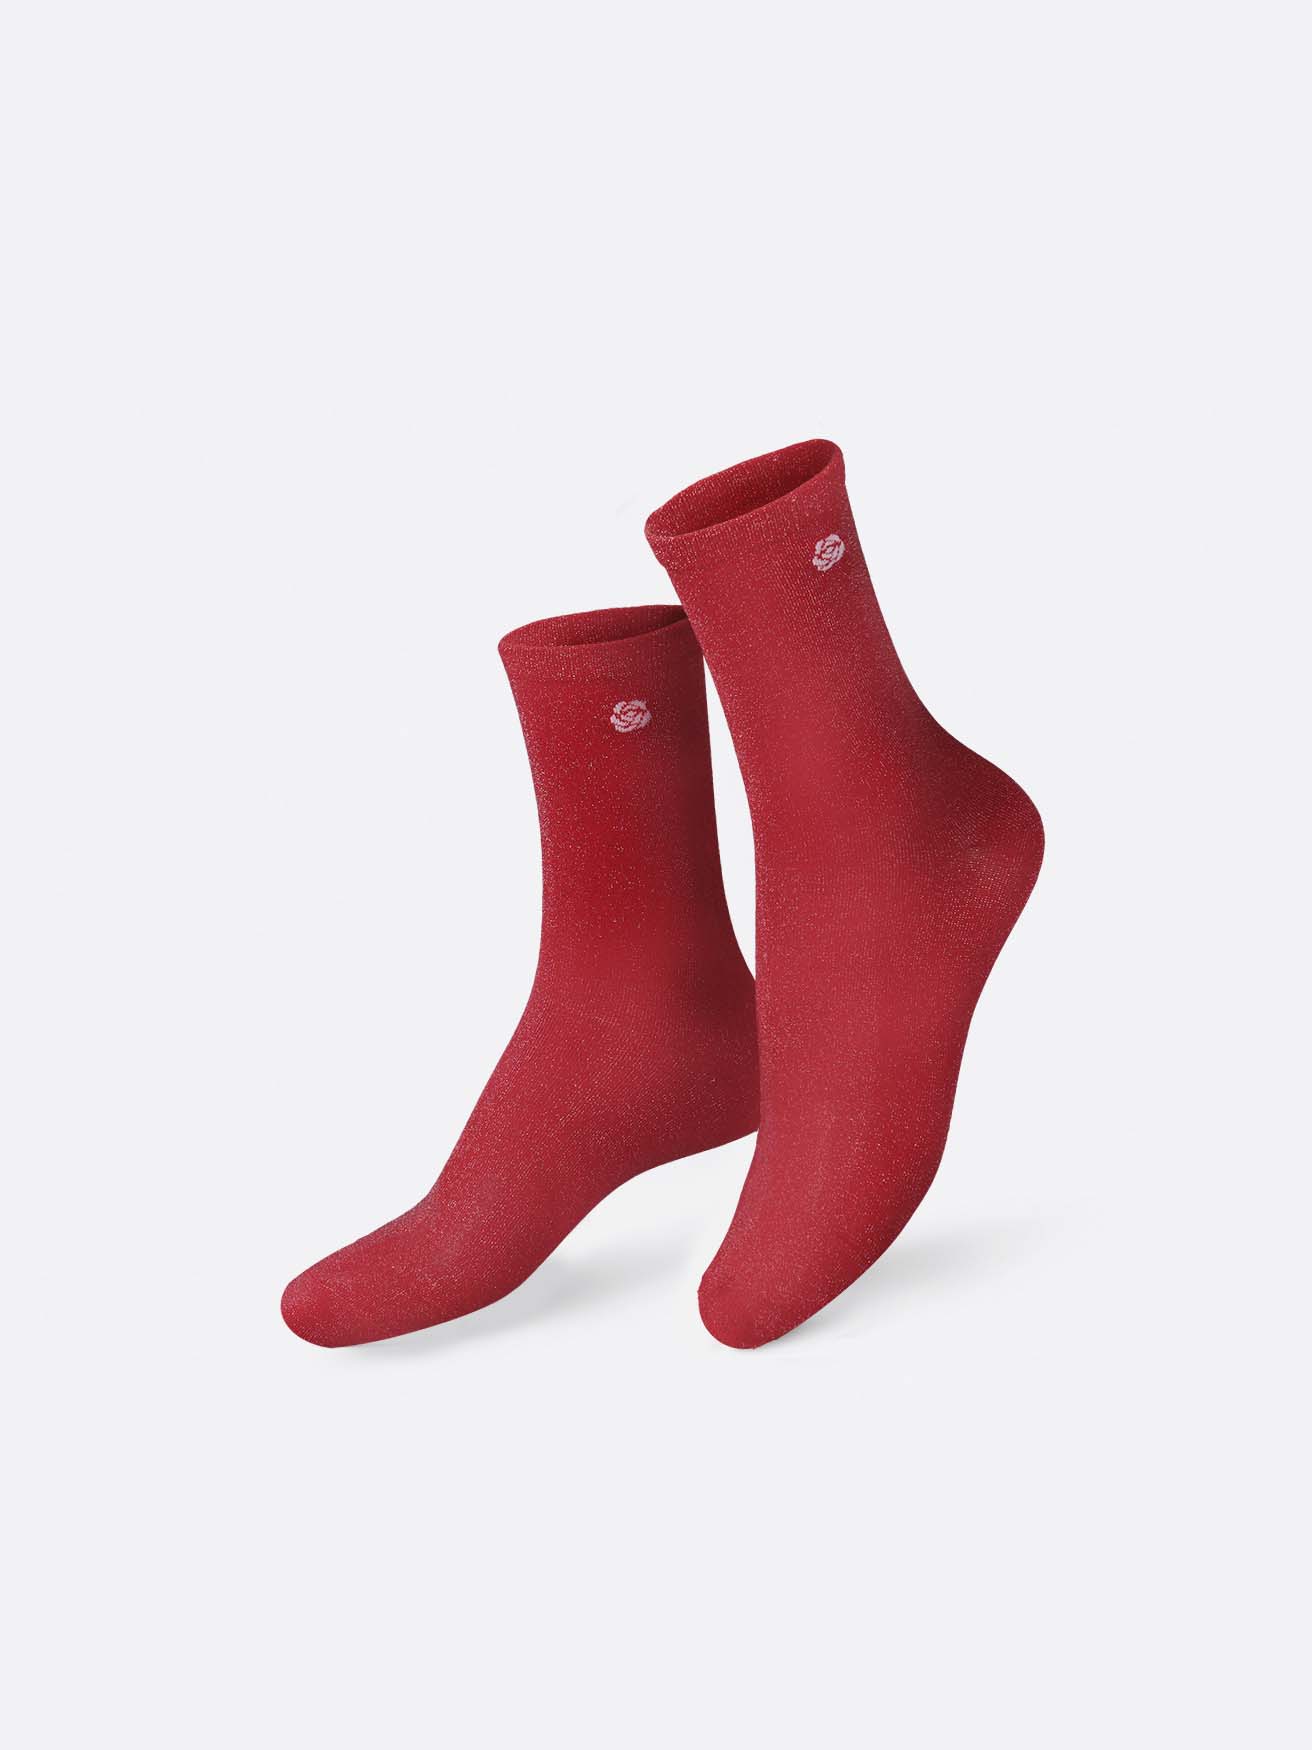 Eat My Socks – Red Rose Socks